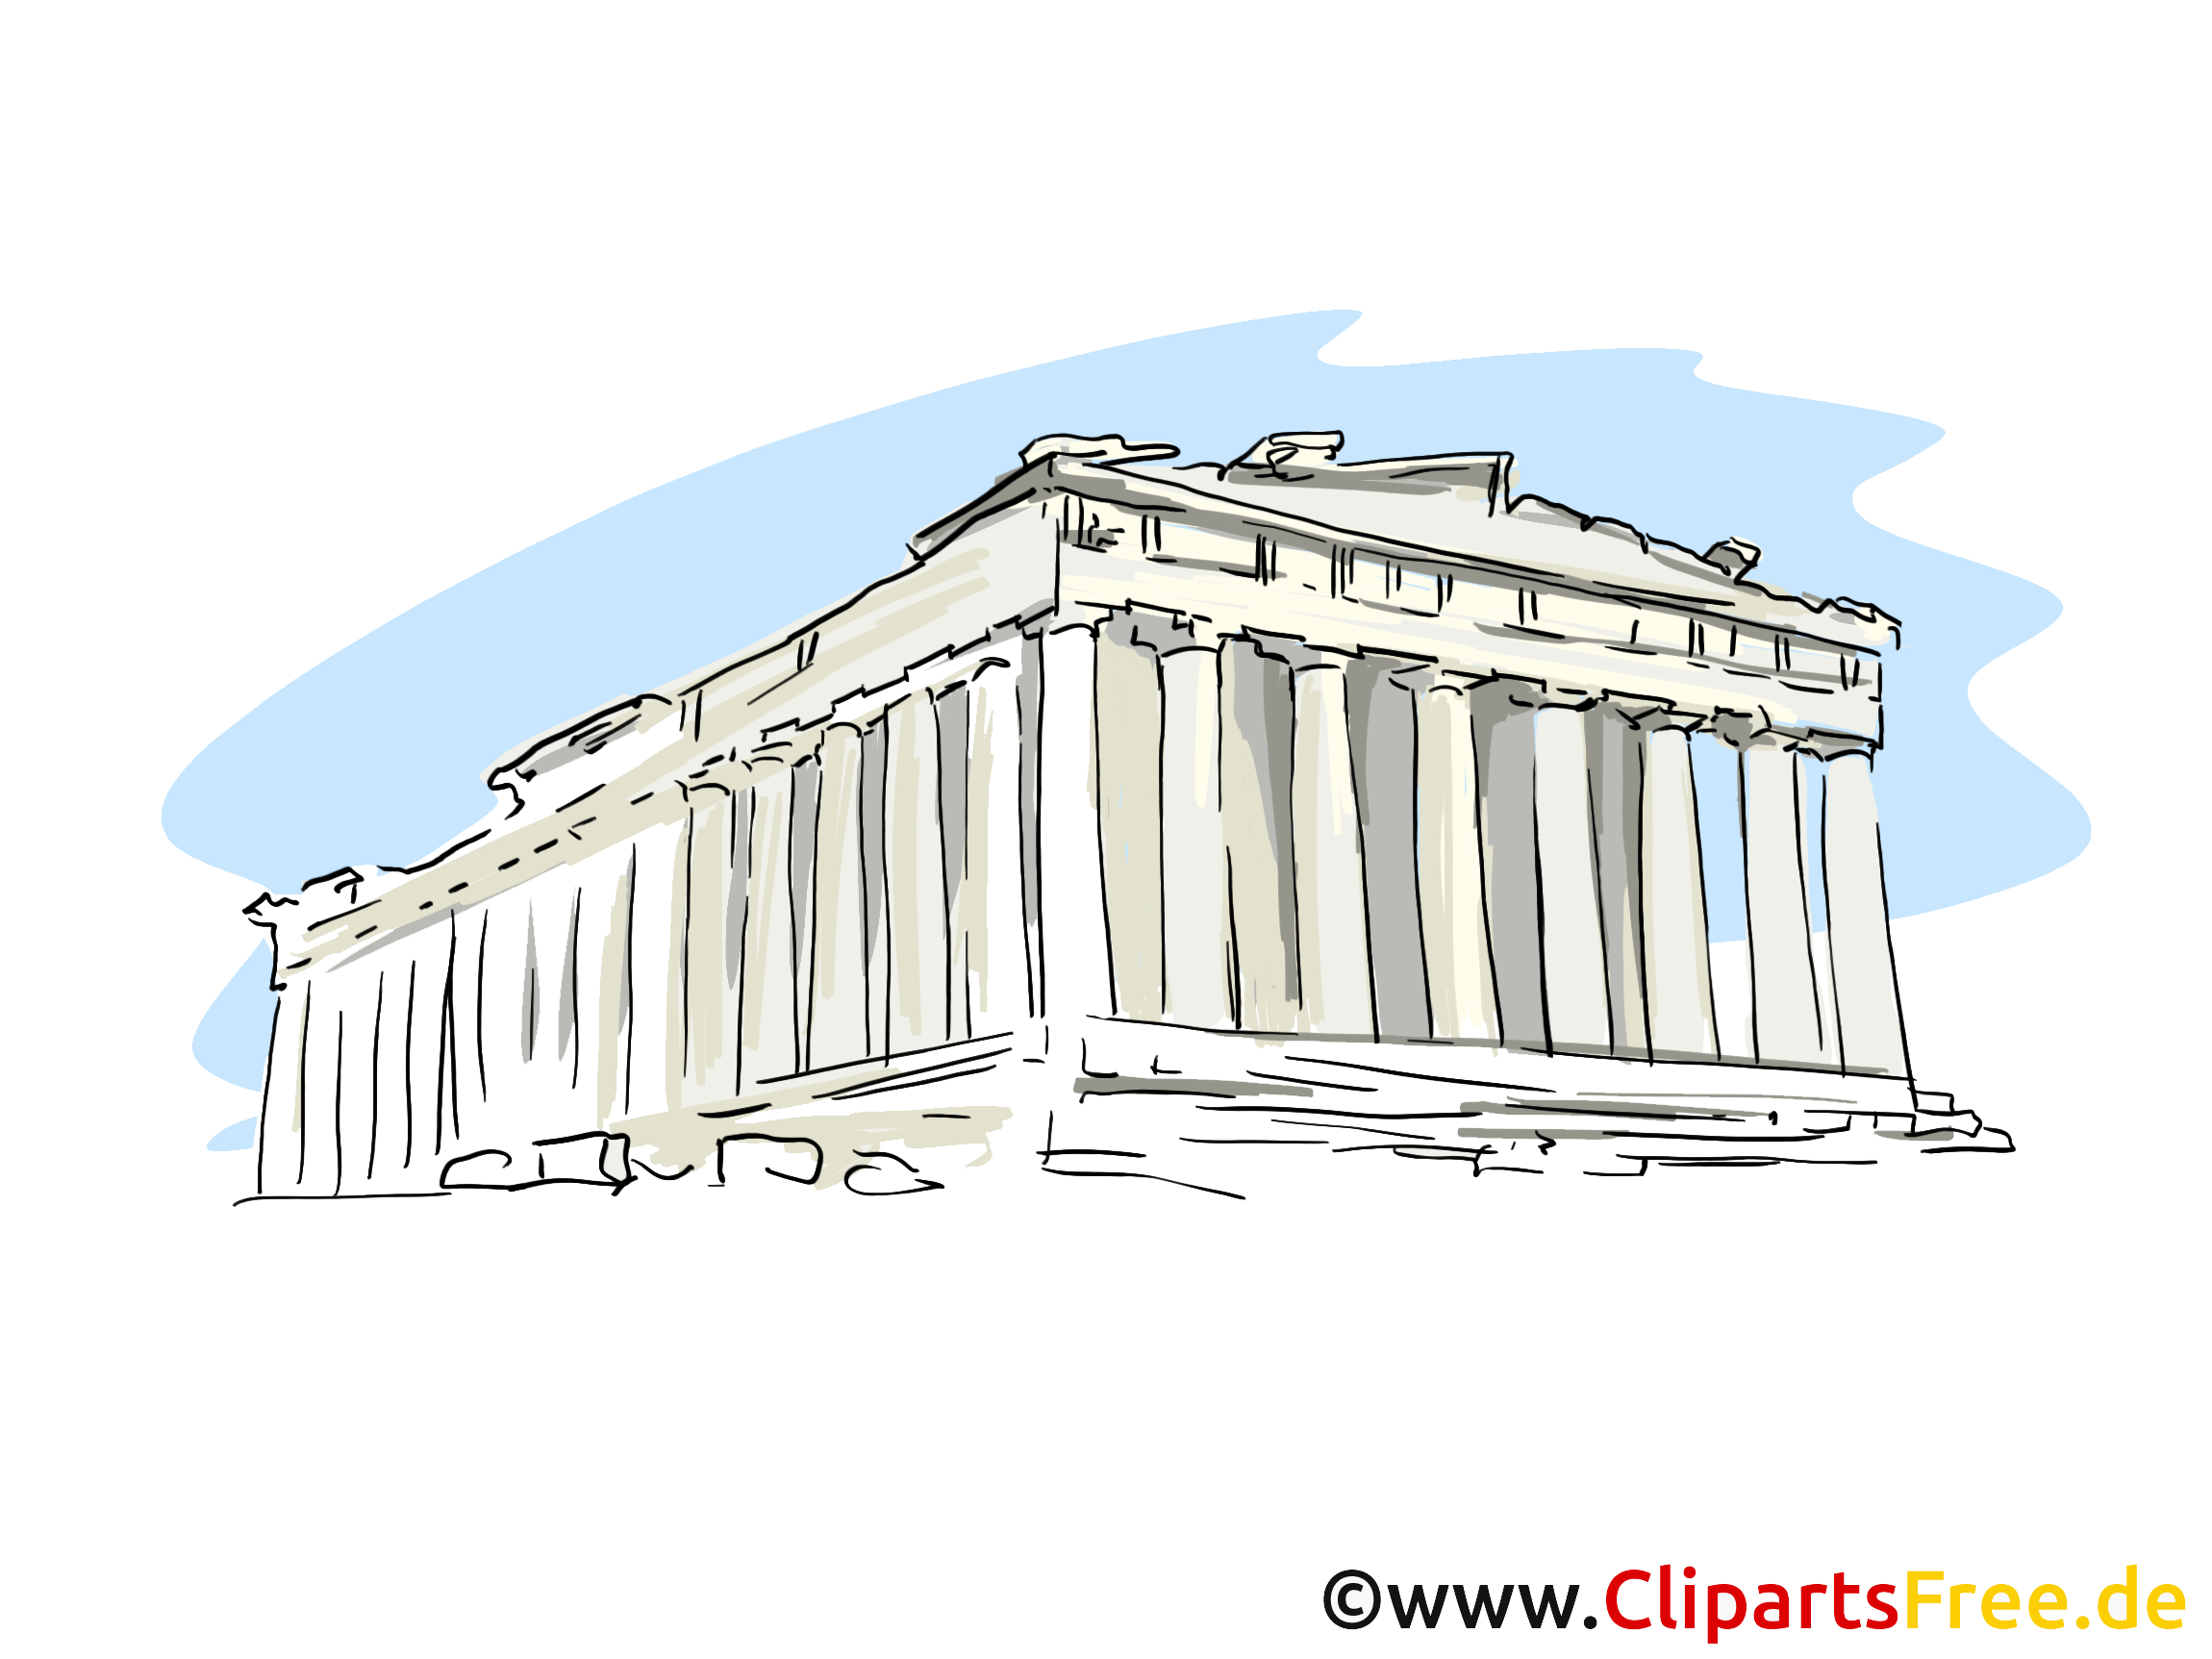 Grèce illustration - Acropol carte gratuite